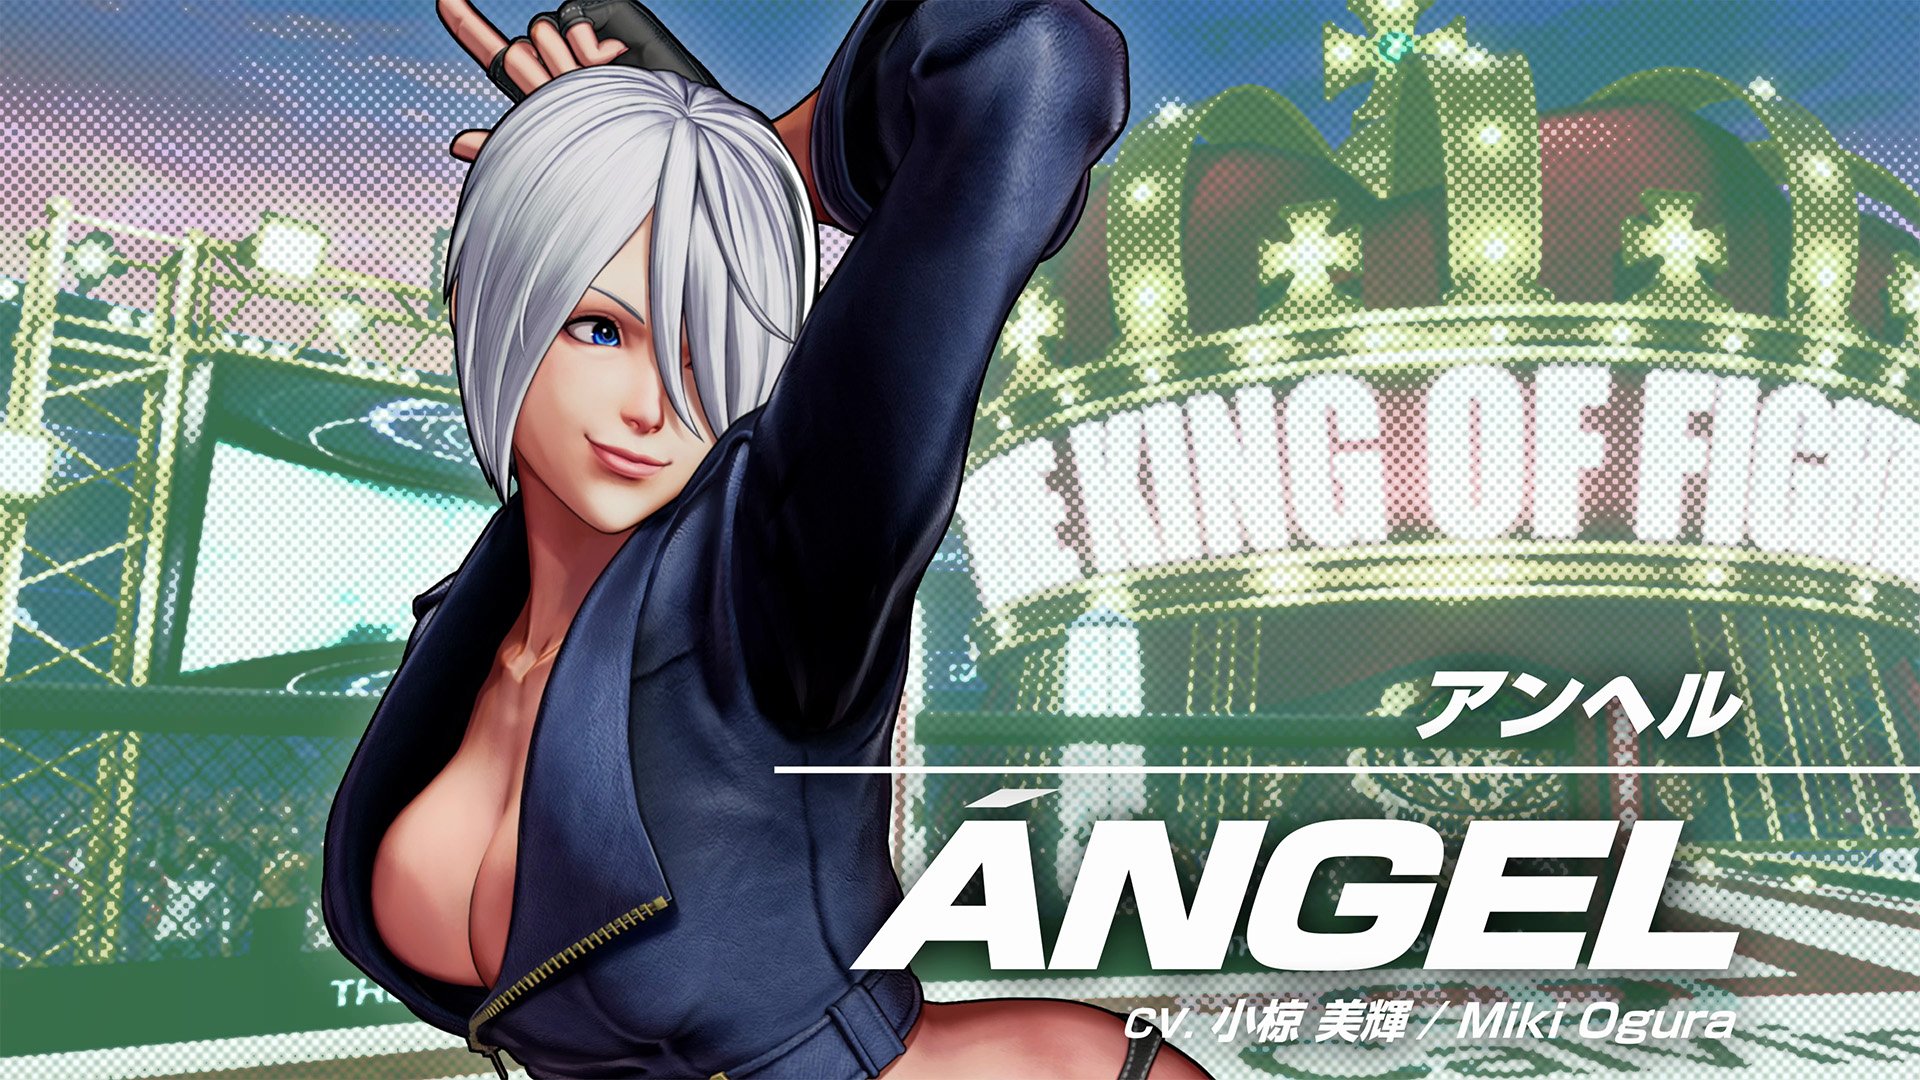 Novo trailer e imagens de The King of Fighters XV com a lutadora Angel 1